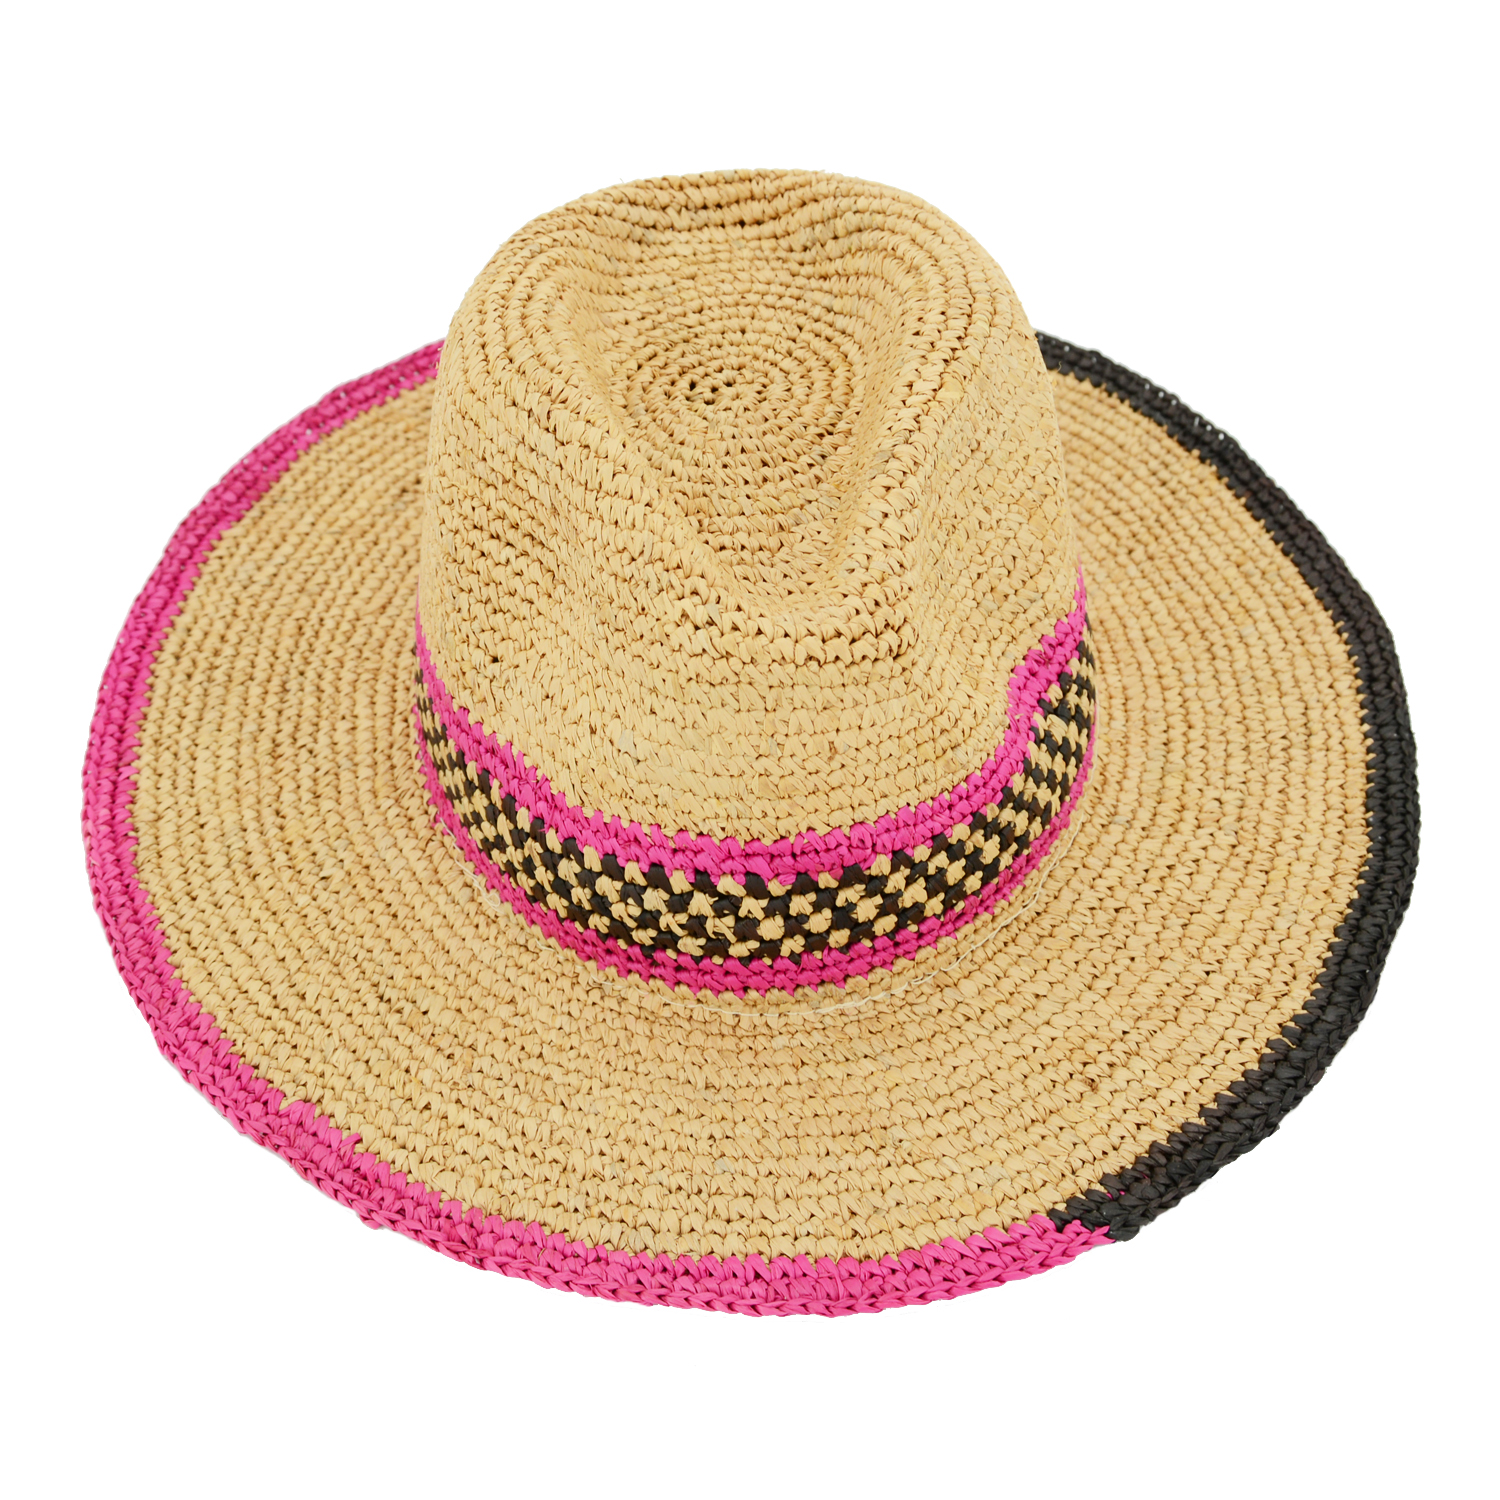 Wide Brim Raffia Panama Hat Striped Design